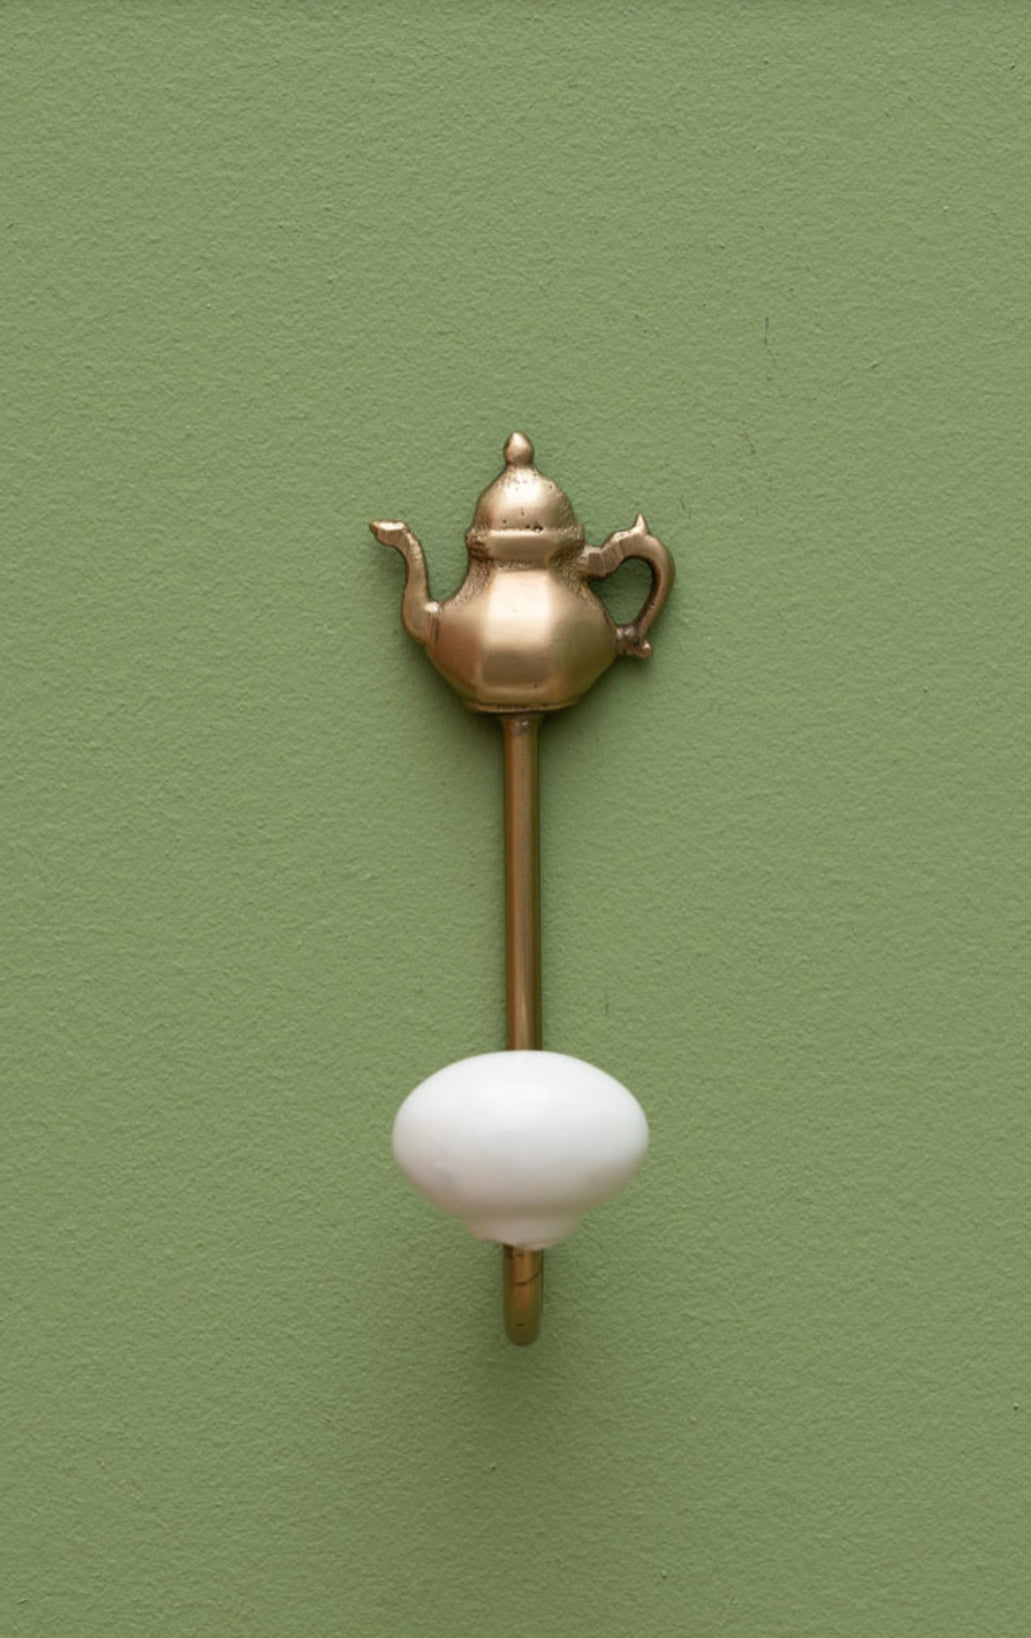 Gancio con pomello in ceramica - hook with ceramic knob